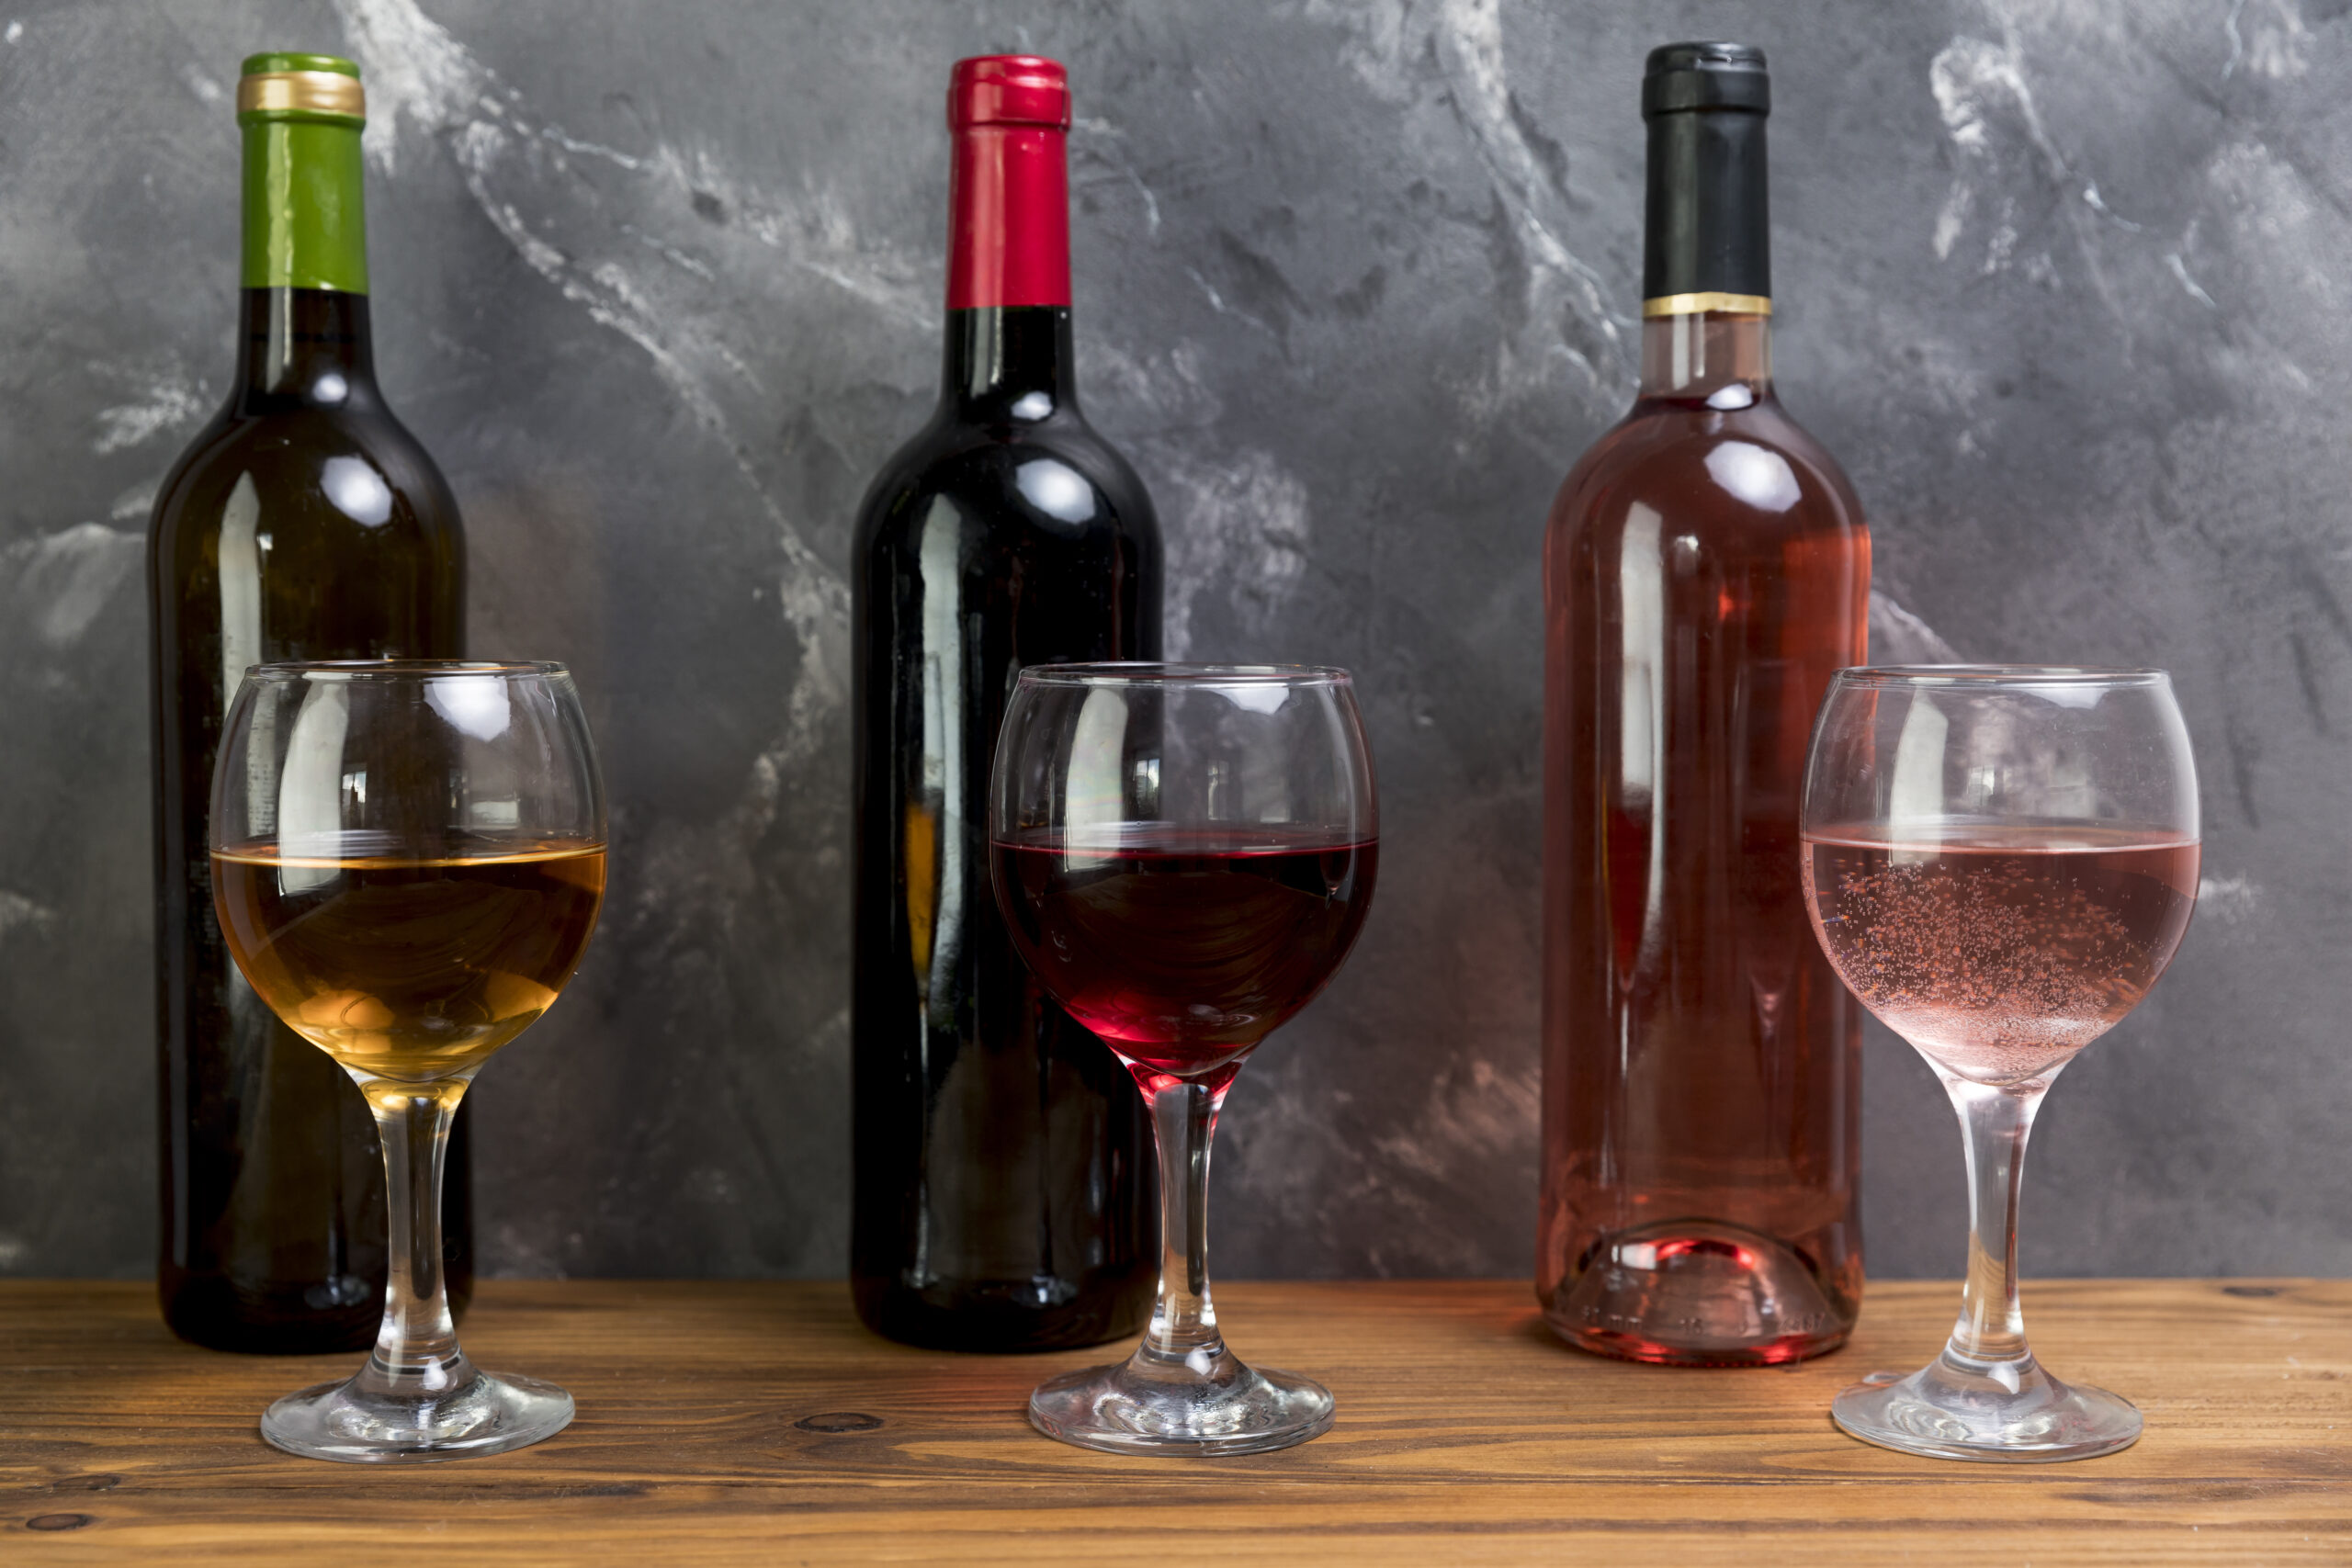 Varieties of wine for tasting